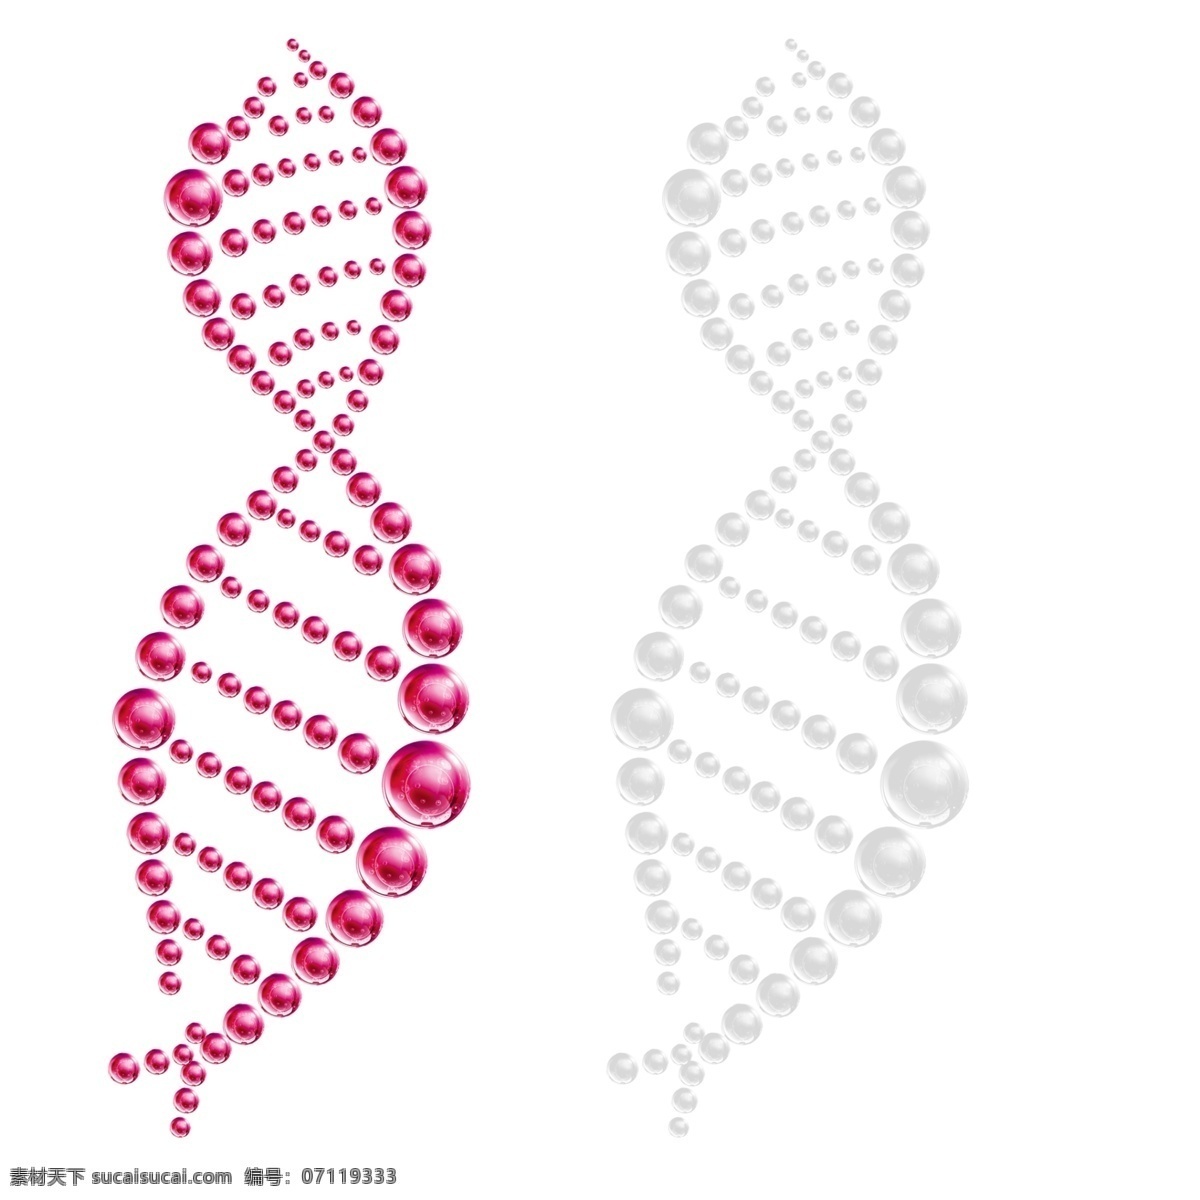 螺旋分子 分子图象 矢量 dna 技术 分子 图象 发光 形状 螺线 几何形状 螺旋 弯曲 蓝色斑点 闪亮的 概念 联系 未来技术 科学 化学 生物学 生物工艺学 微生物学 进化 健康生活方式 沟通 商务 健康保健 图像特效 细胞 染色体 光 粒子 分子结构 药 化学元素 周期表 抽象背景